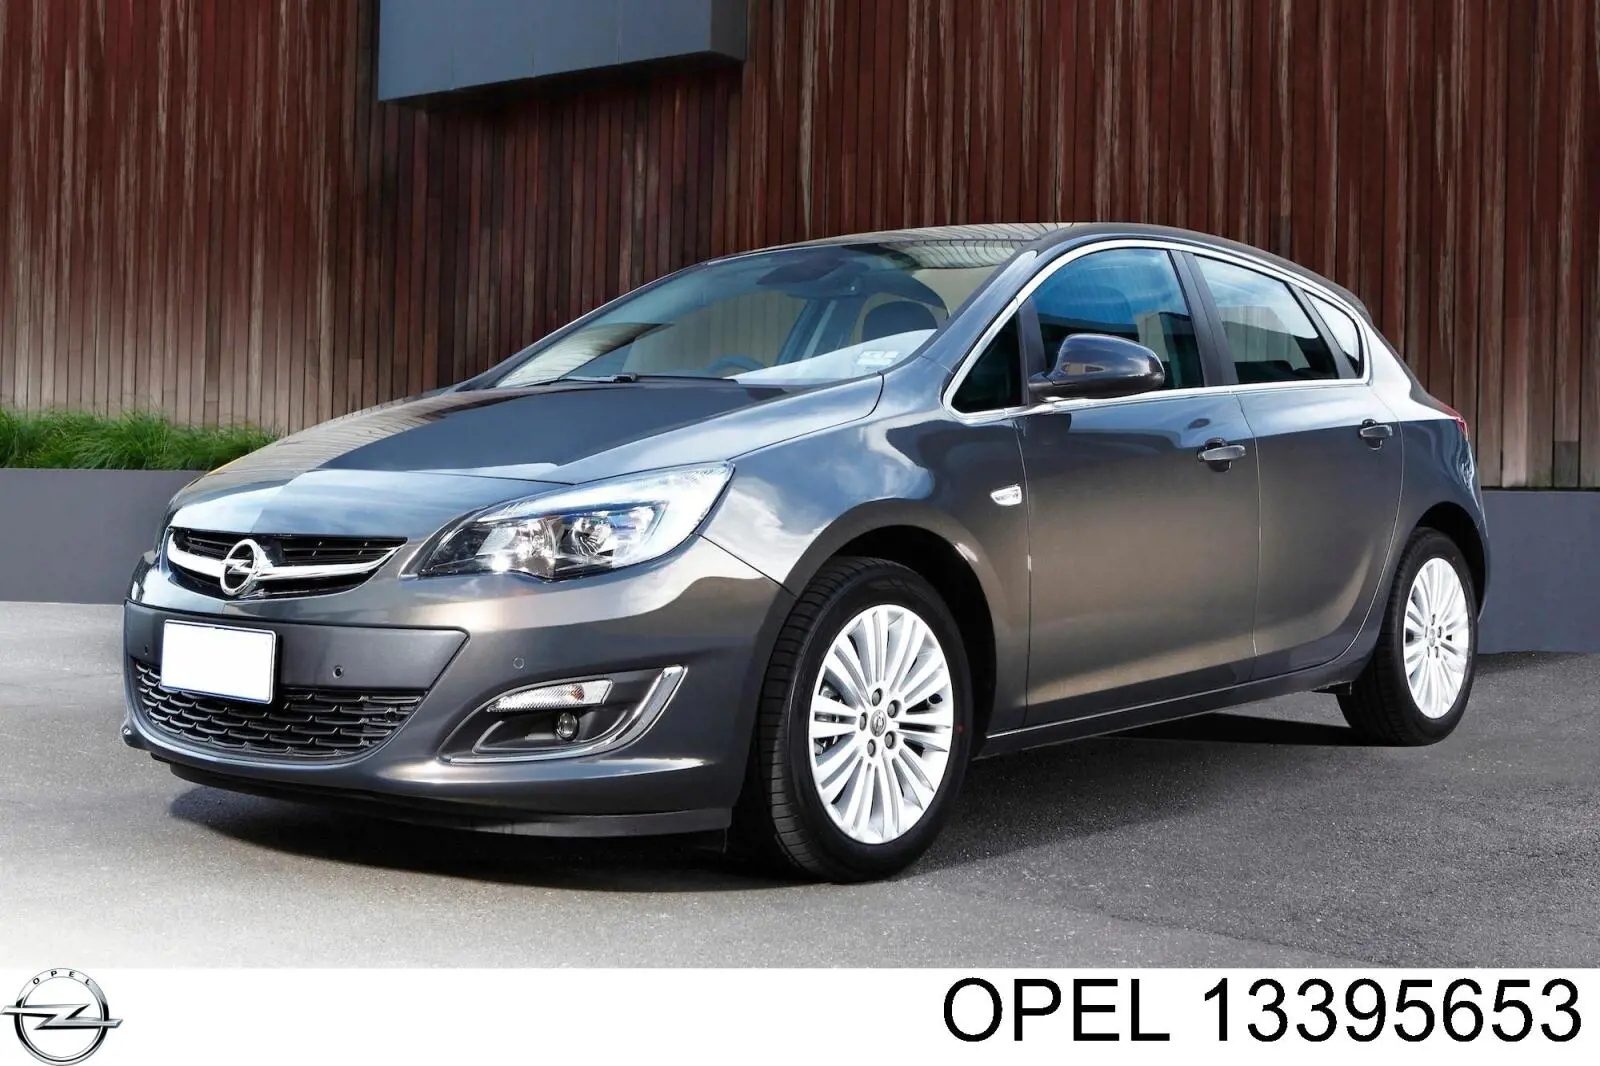 13395653 Opel paragolpes delantero